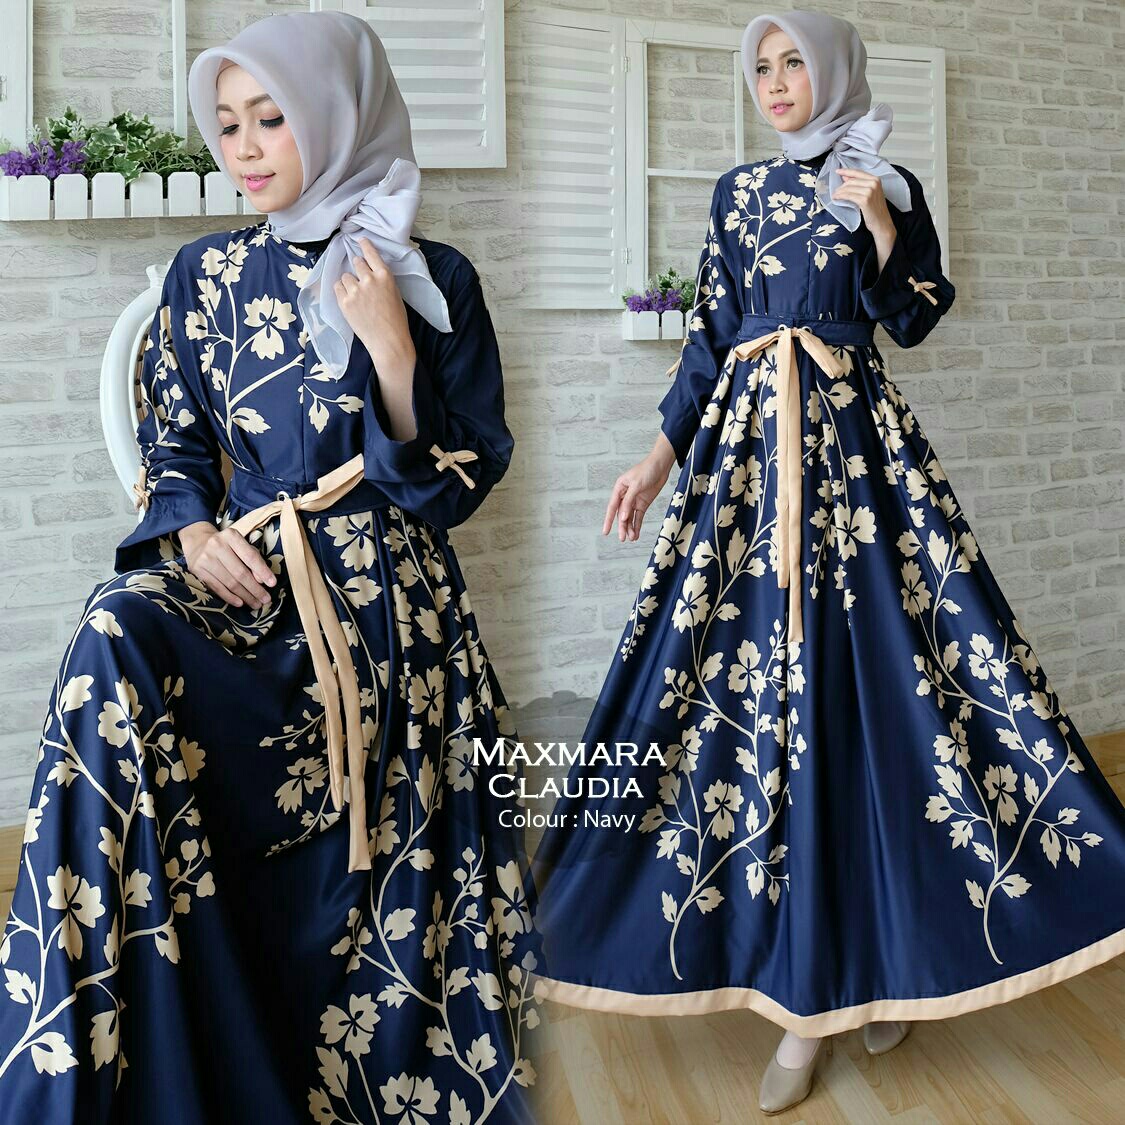 Gamis Modern Claudia Maxi Maxmara - Baju Muslim Cantik